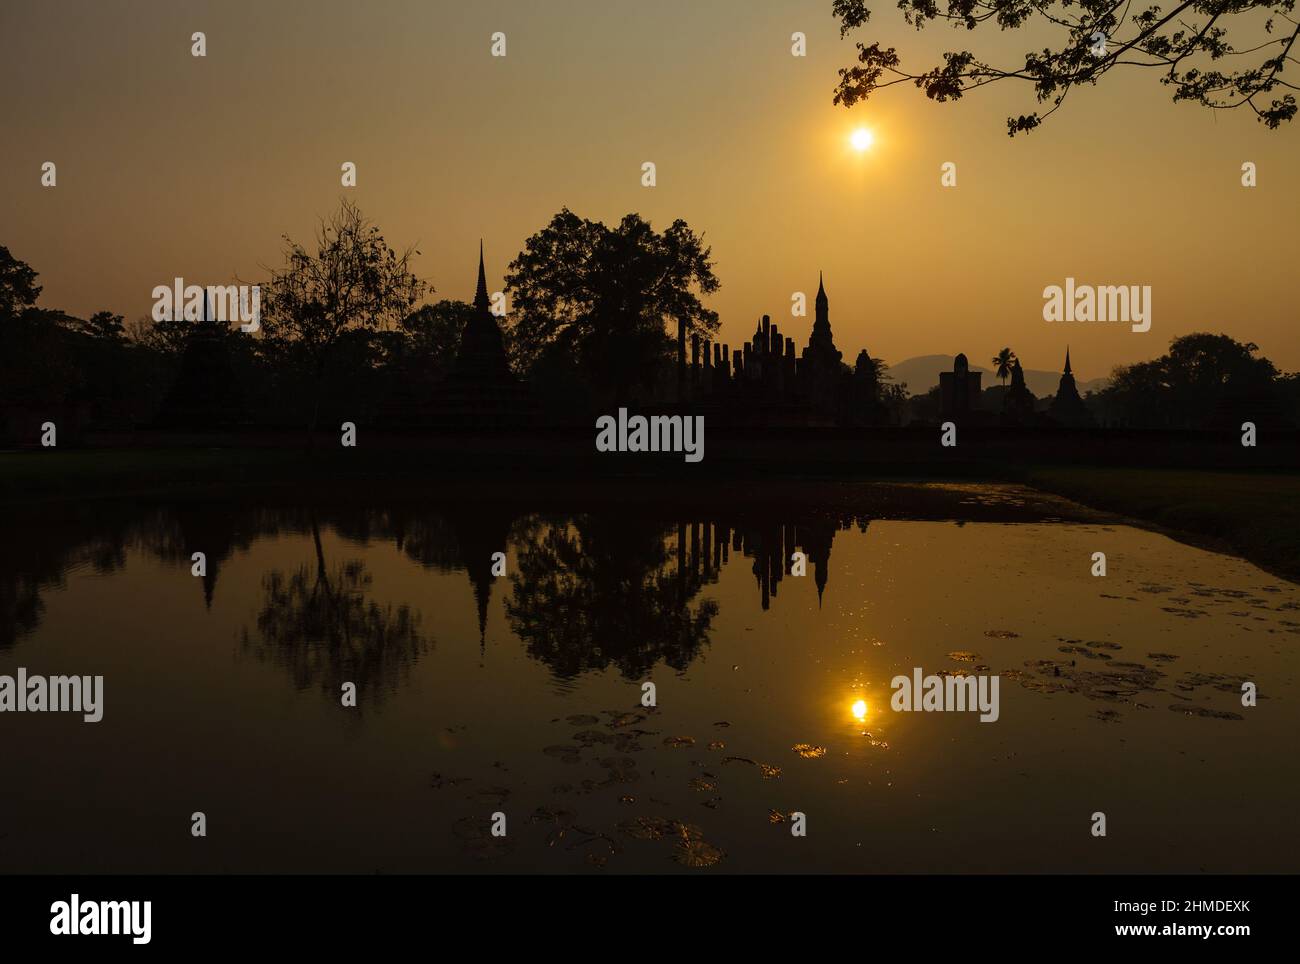 Sukhotai historischer Park, Wat Mahathat Ruinen bei Sonnenuntergang. Einer der schönsten und sehenswertesten Orte in Thailand. Beliebtes Reiseziel während des Besuchs Stockfoto